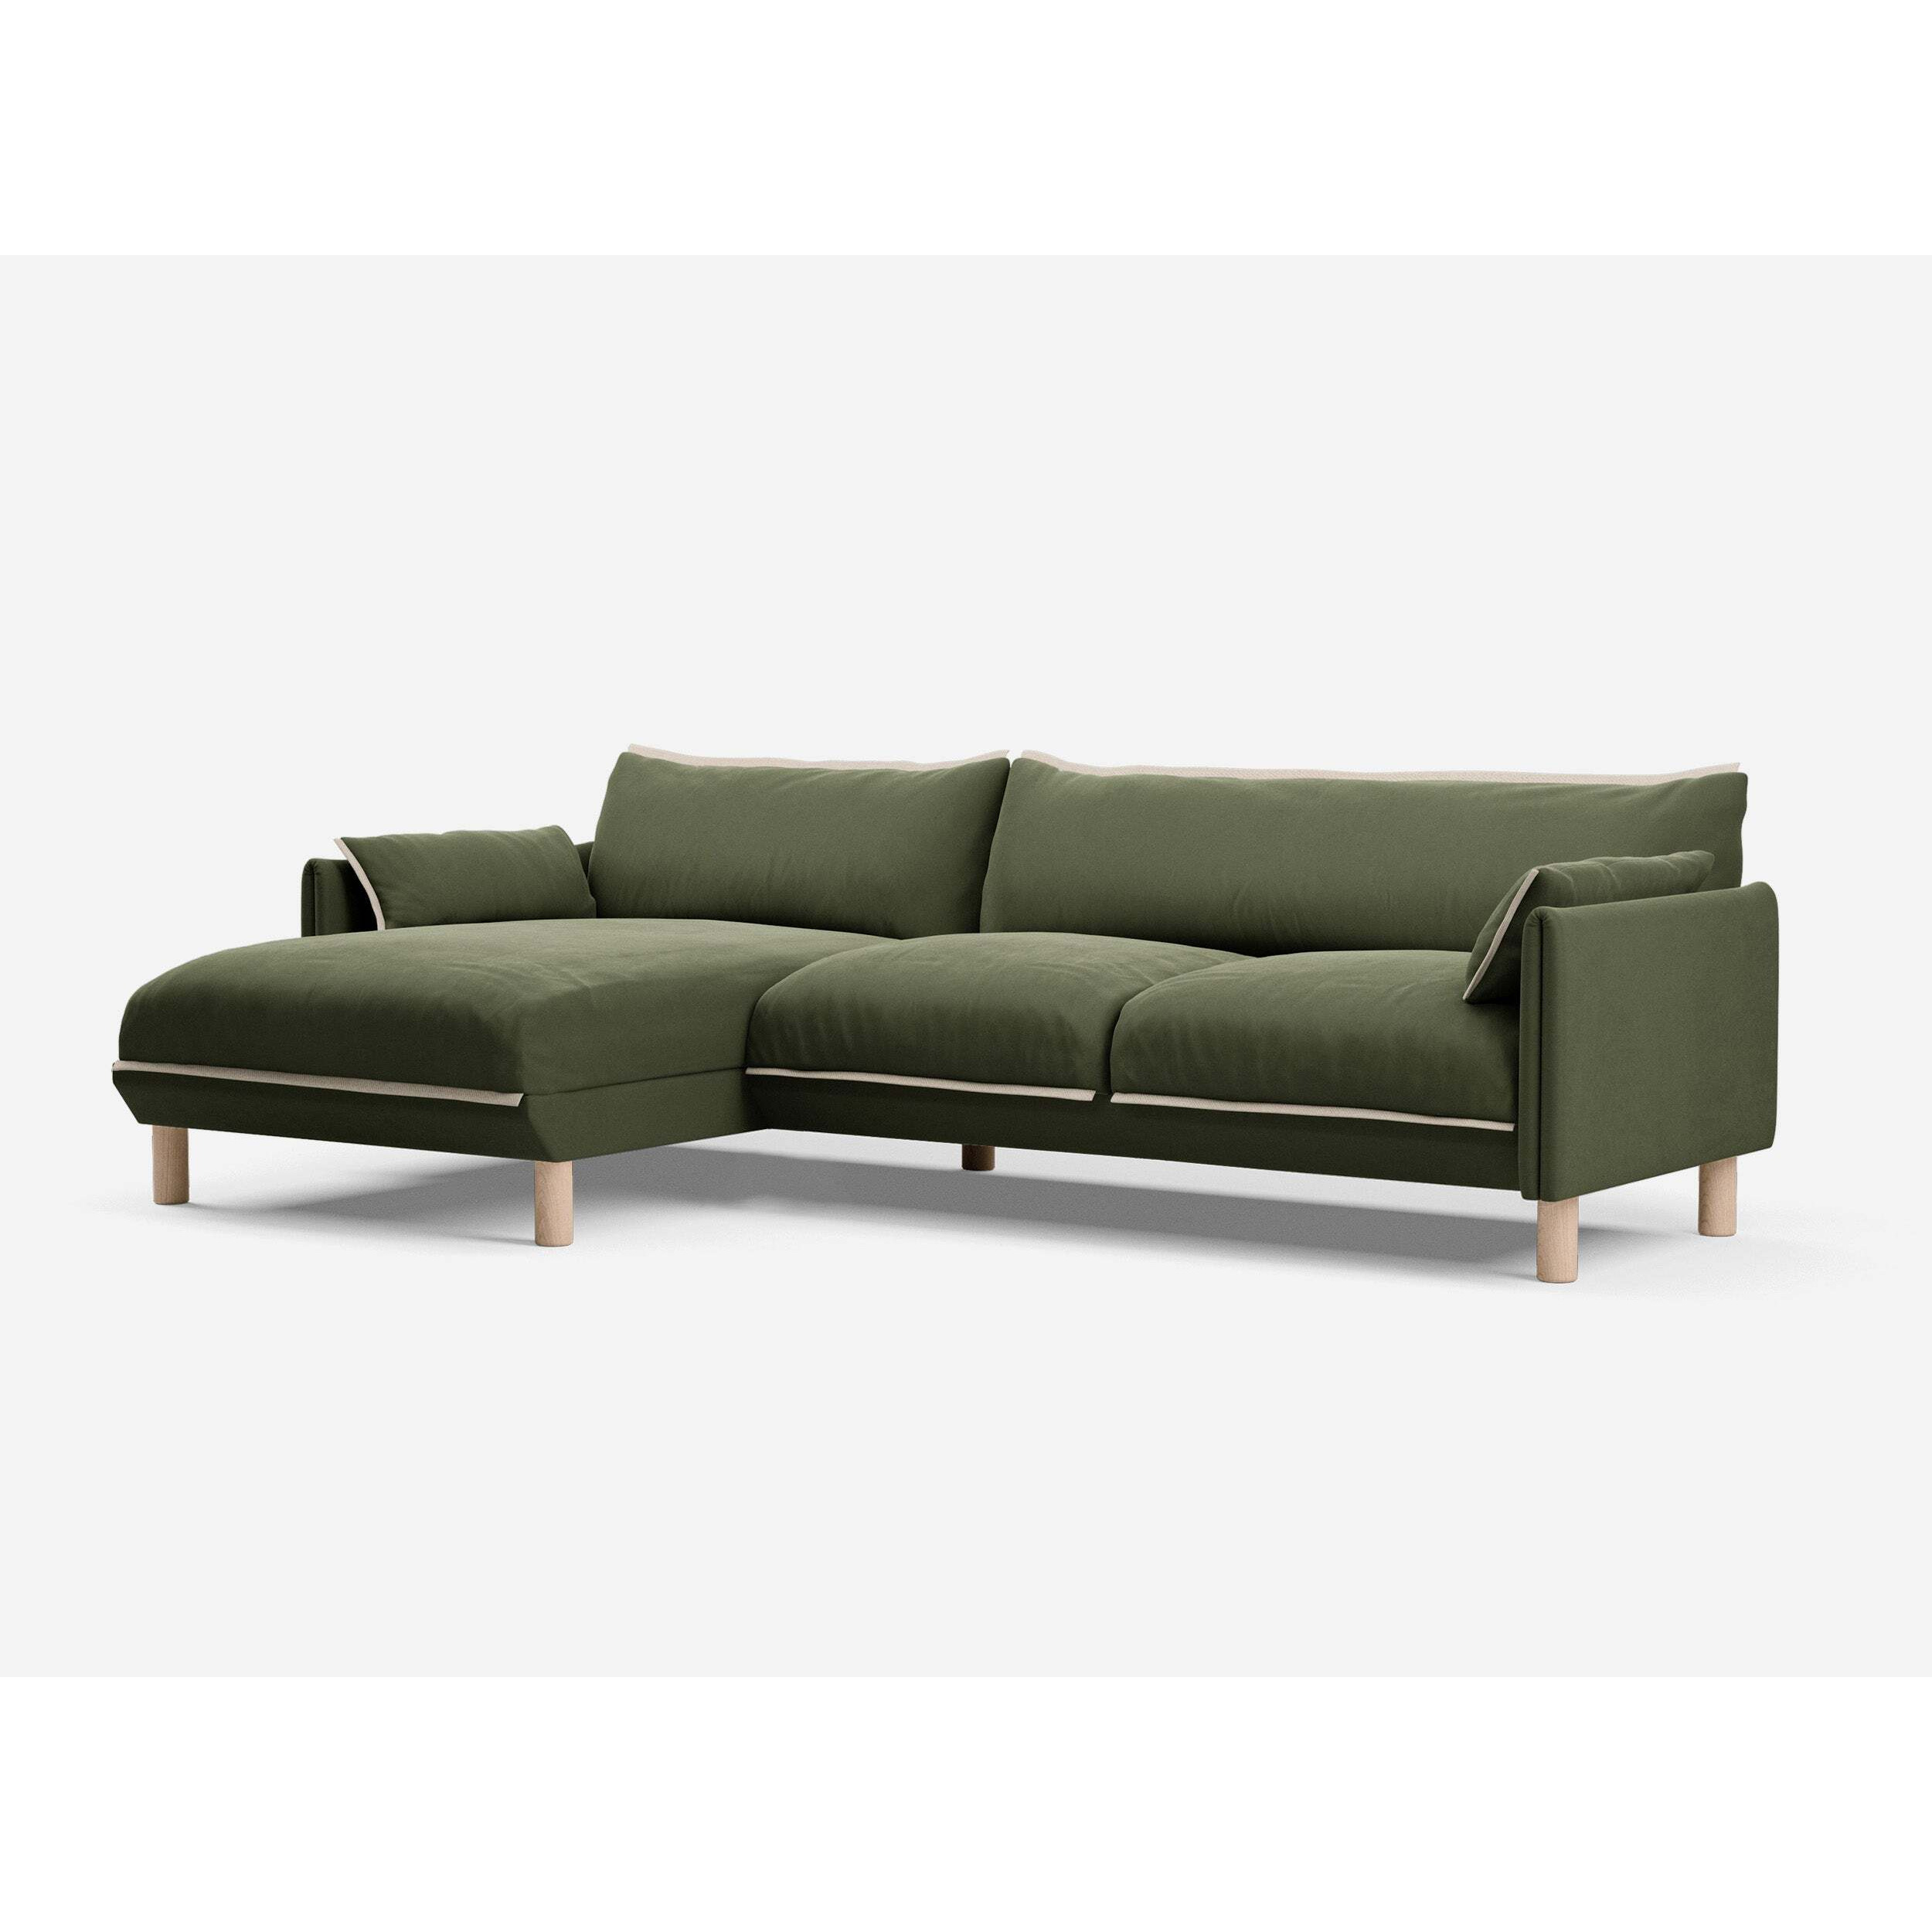 4 Seater LH Chaise Sofa - Dark Green Velvet - image 1